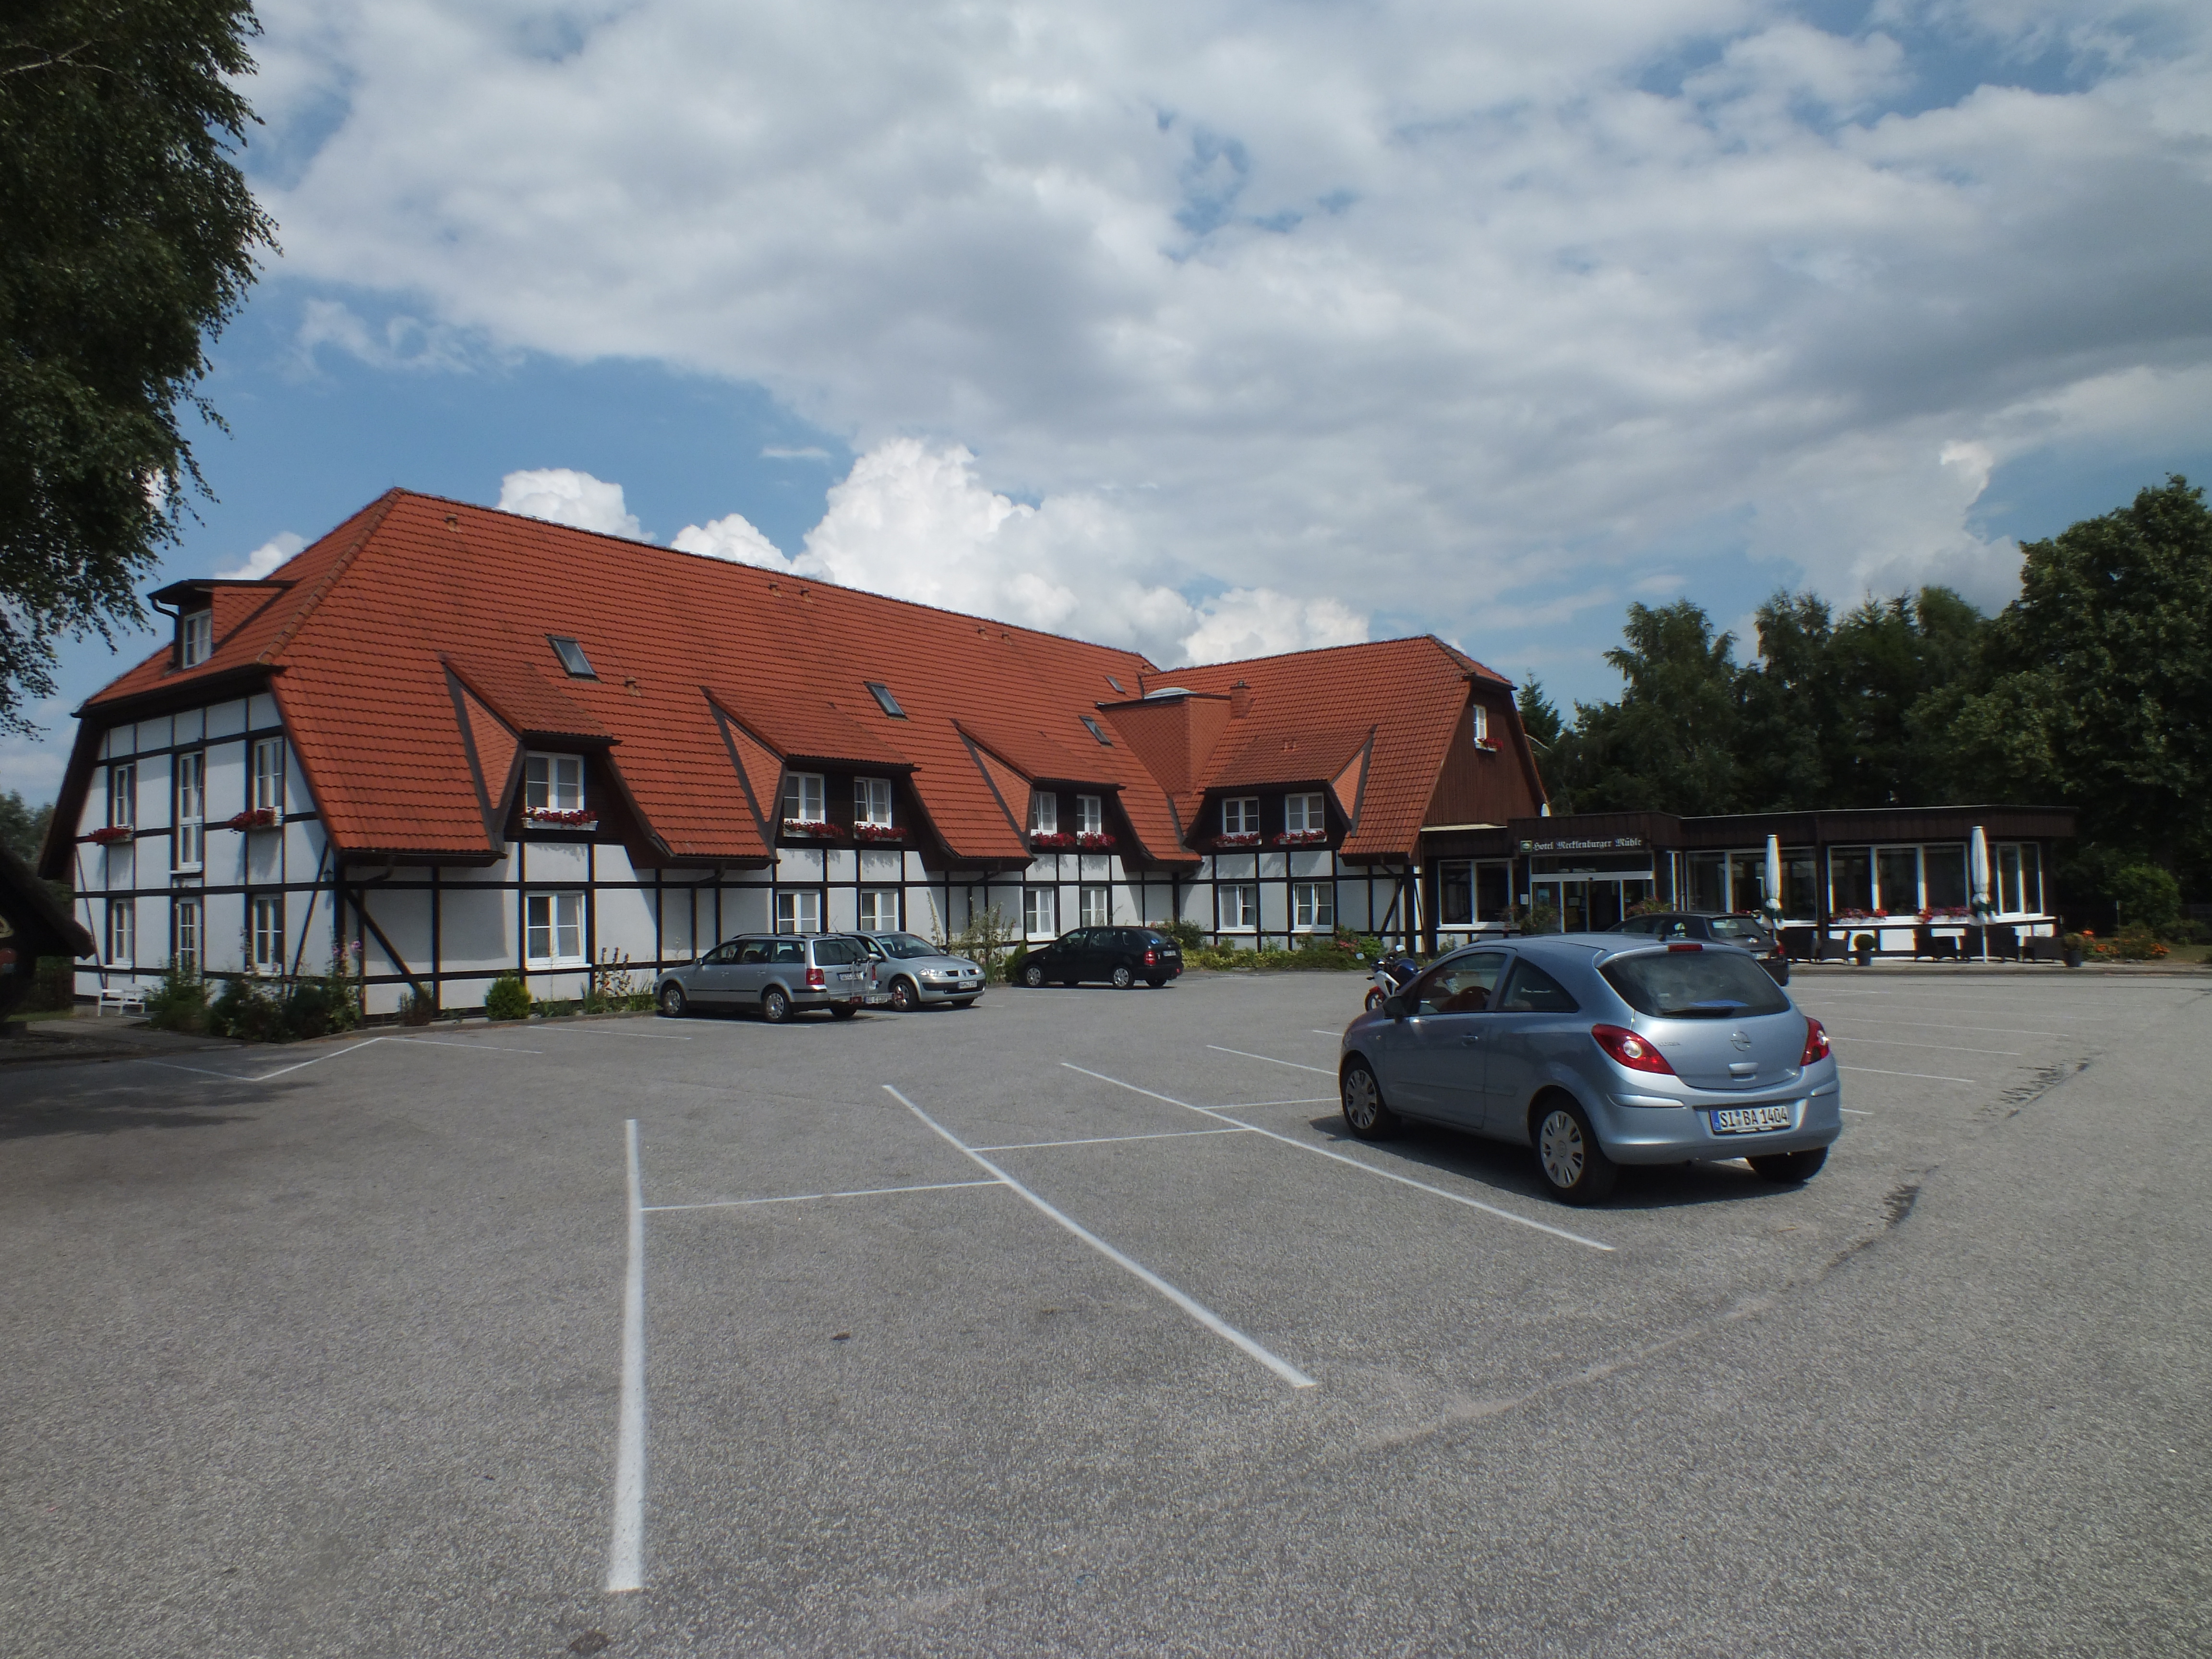 Das Hotel der Mecklenburger Mühle in Dorf Mecklenburg/ Wismar